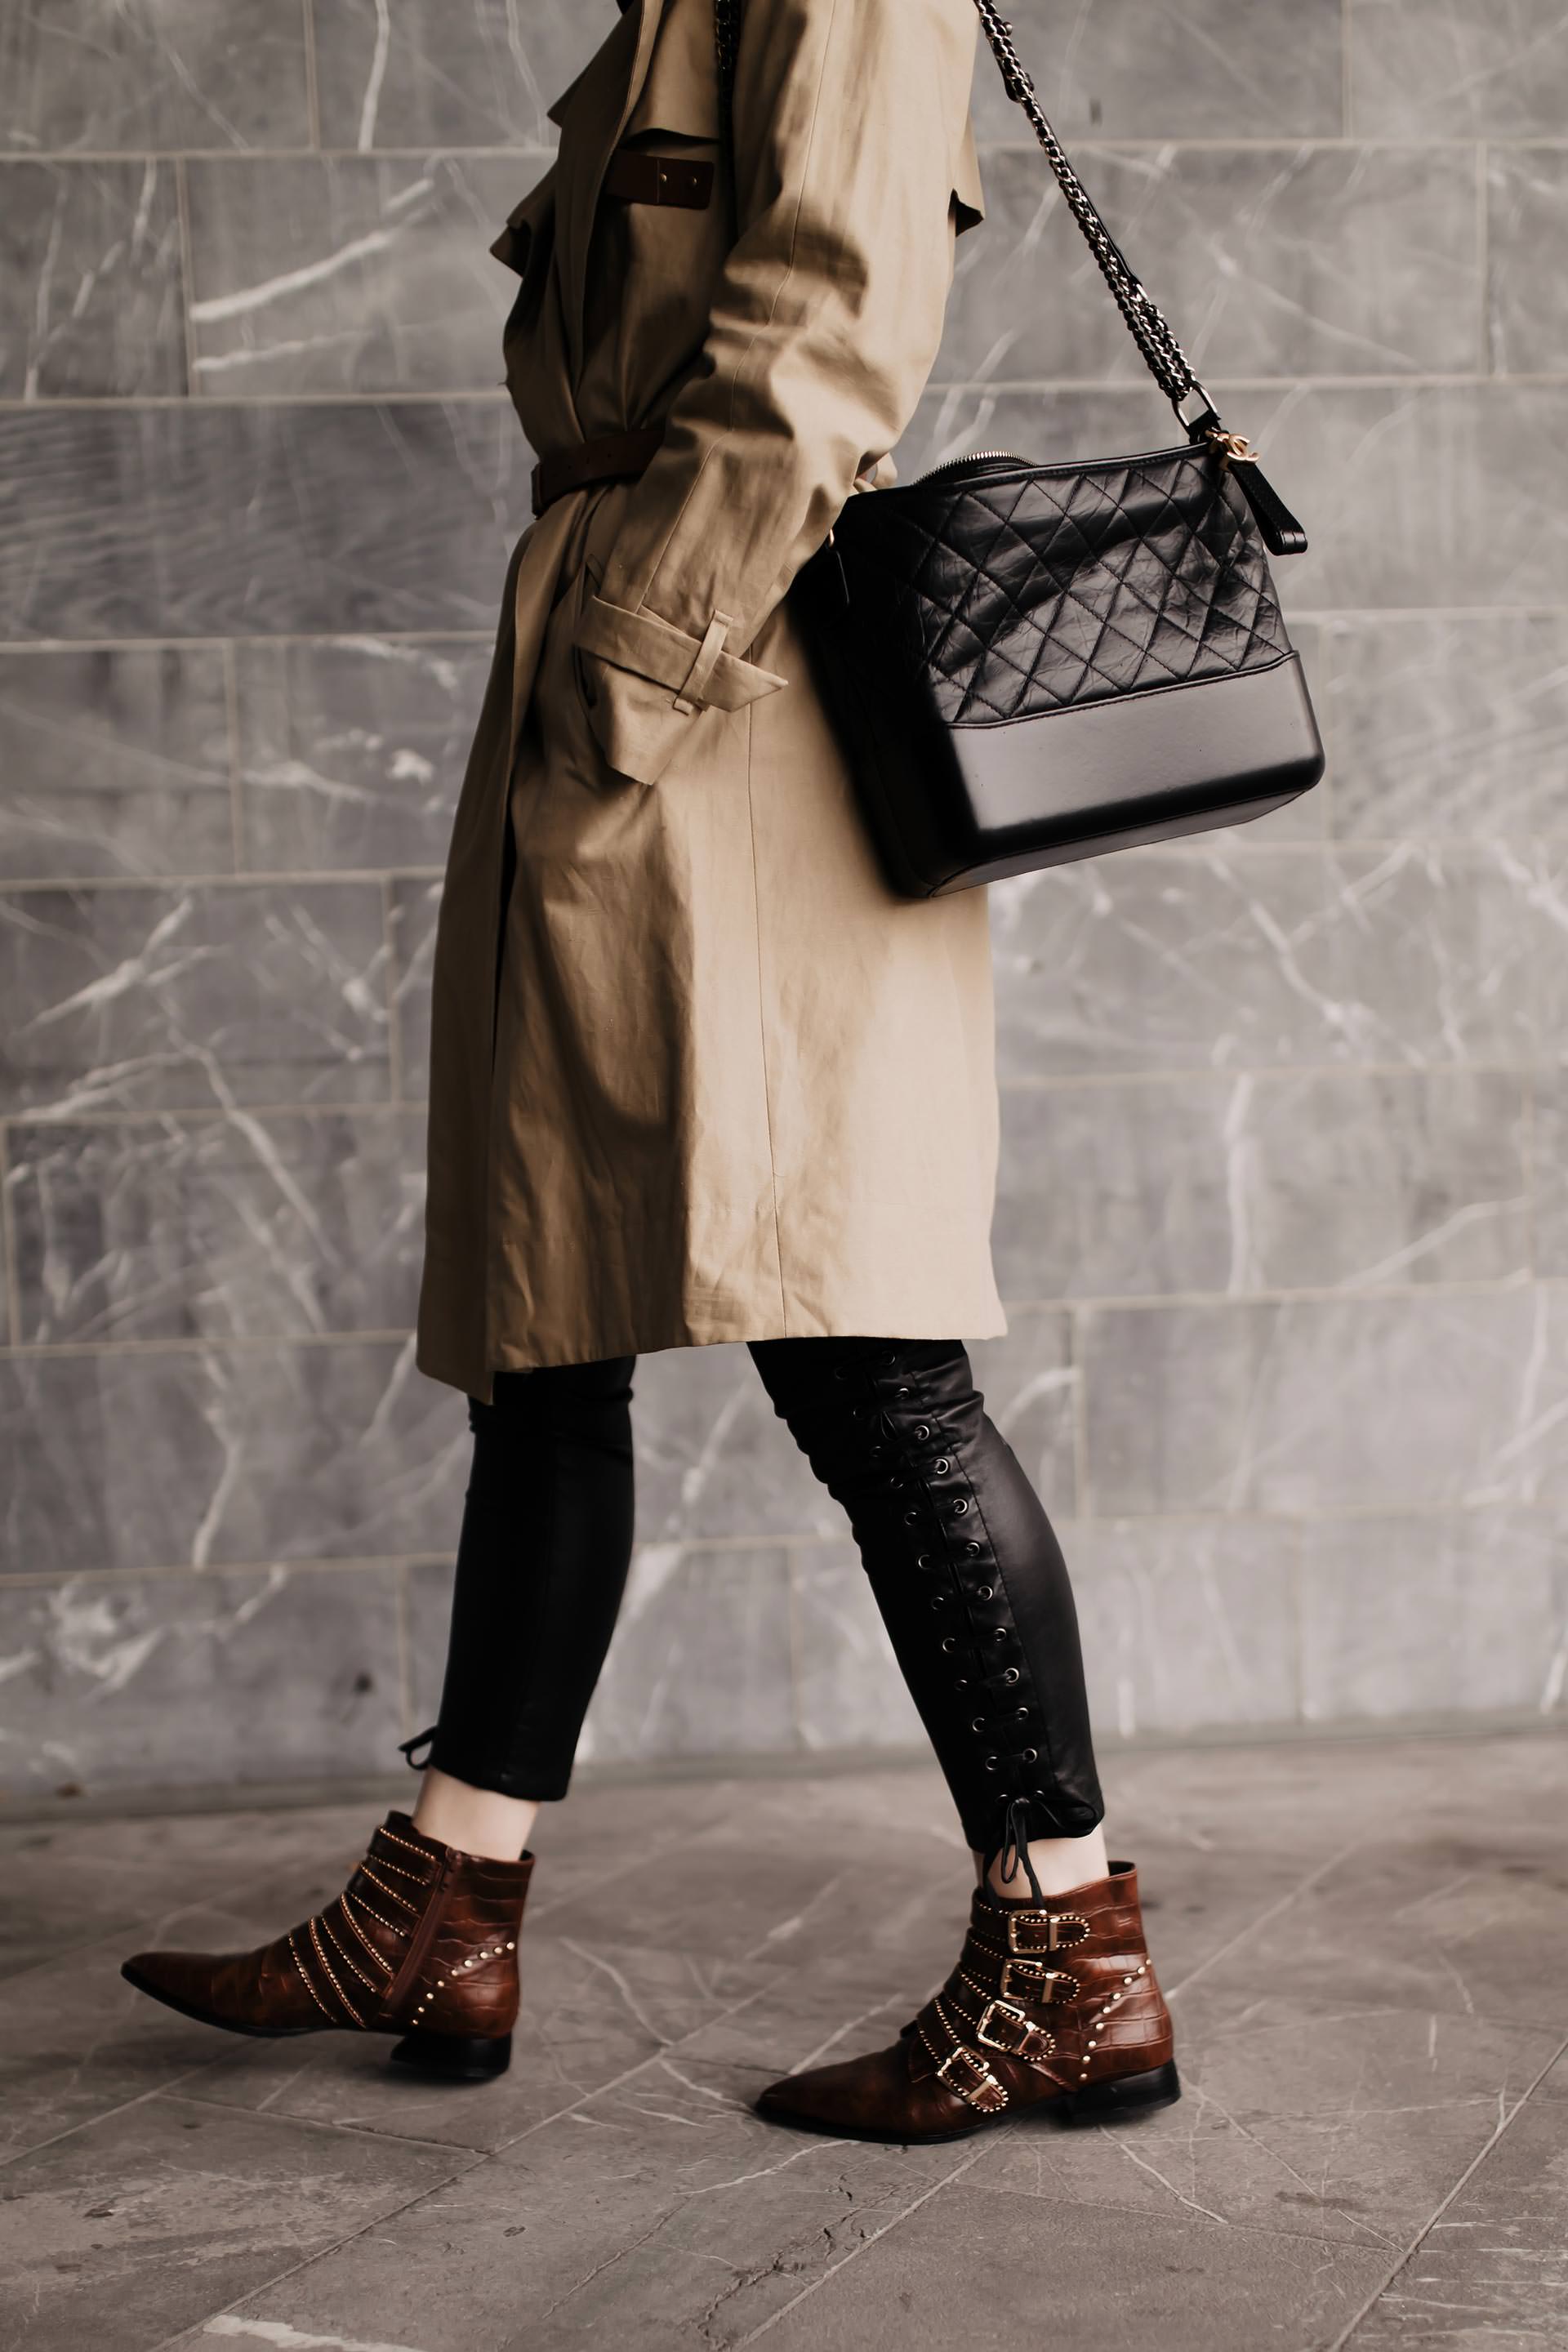 Produktplatzierung. Am Modeblog findest du heute ein Herbst Outfit mit Lederhose, Trenchcoat und Nieten-Boots. Wie immer mit allen Shopping-Details und Mode Tipps. Klick dich rein und ich zeige dir, wie gut man eine schwarze Lederhose kombinieren kann, wo du die perfekten Herbst Trenchcoats kaufen kannst und wo es die braunen Nieten-Boots gibt! www.whoismocca.com #herbstoutfit #lederhose #modetrends #trenchcoat